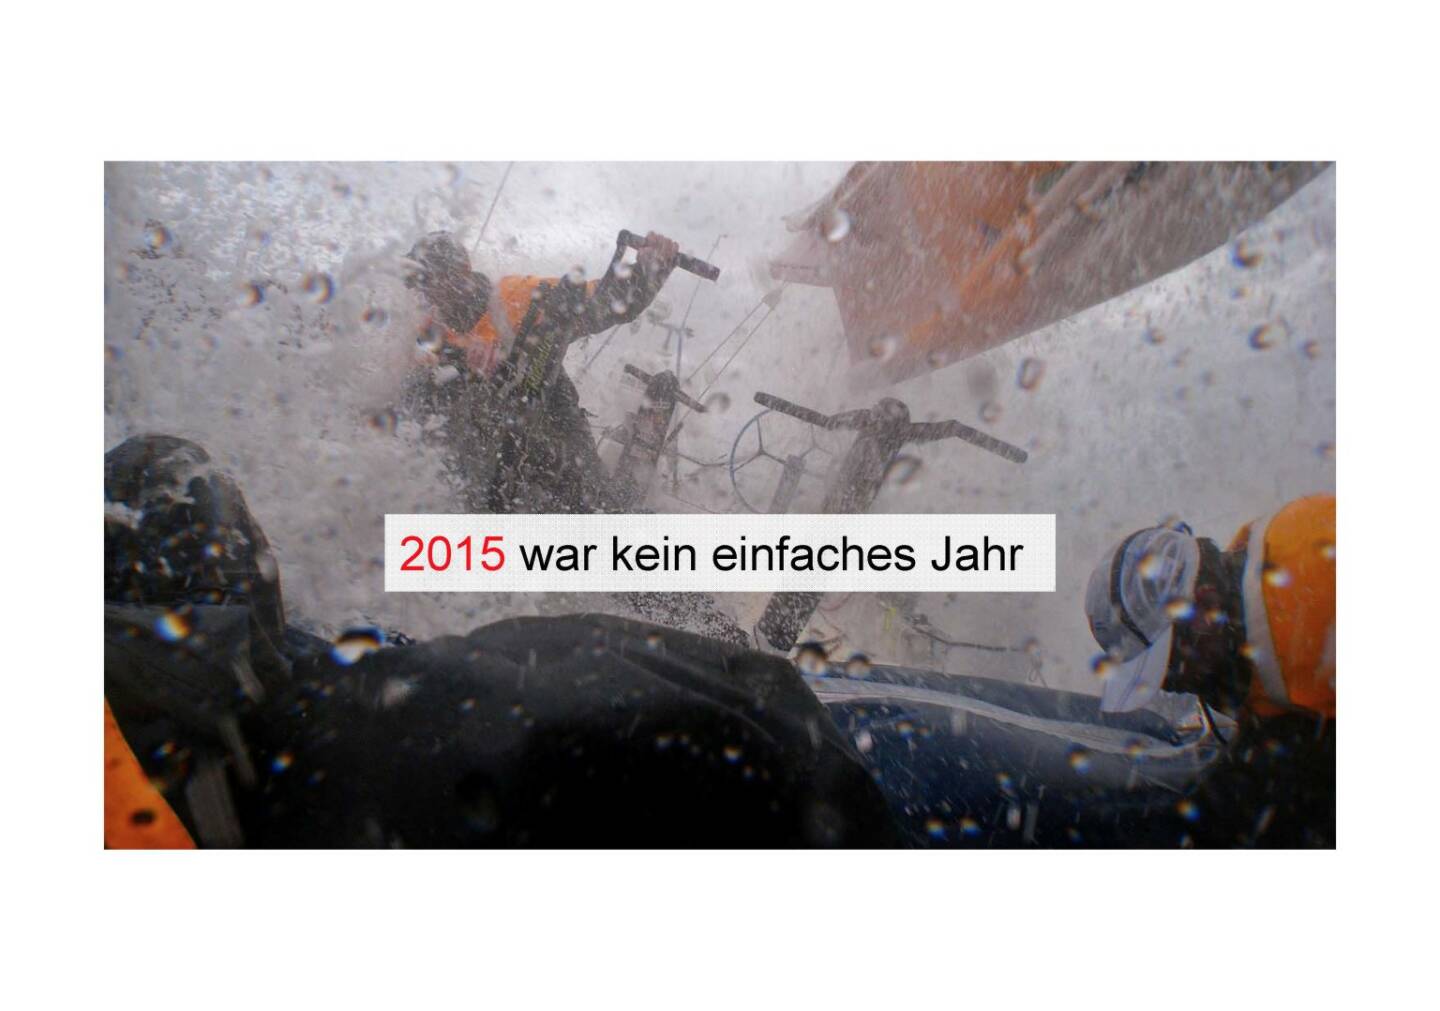 Deutsche Post - 2015 war kein einfaches Jahr